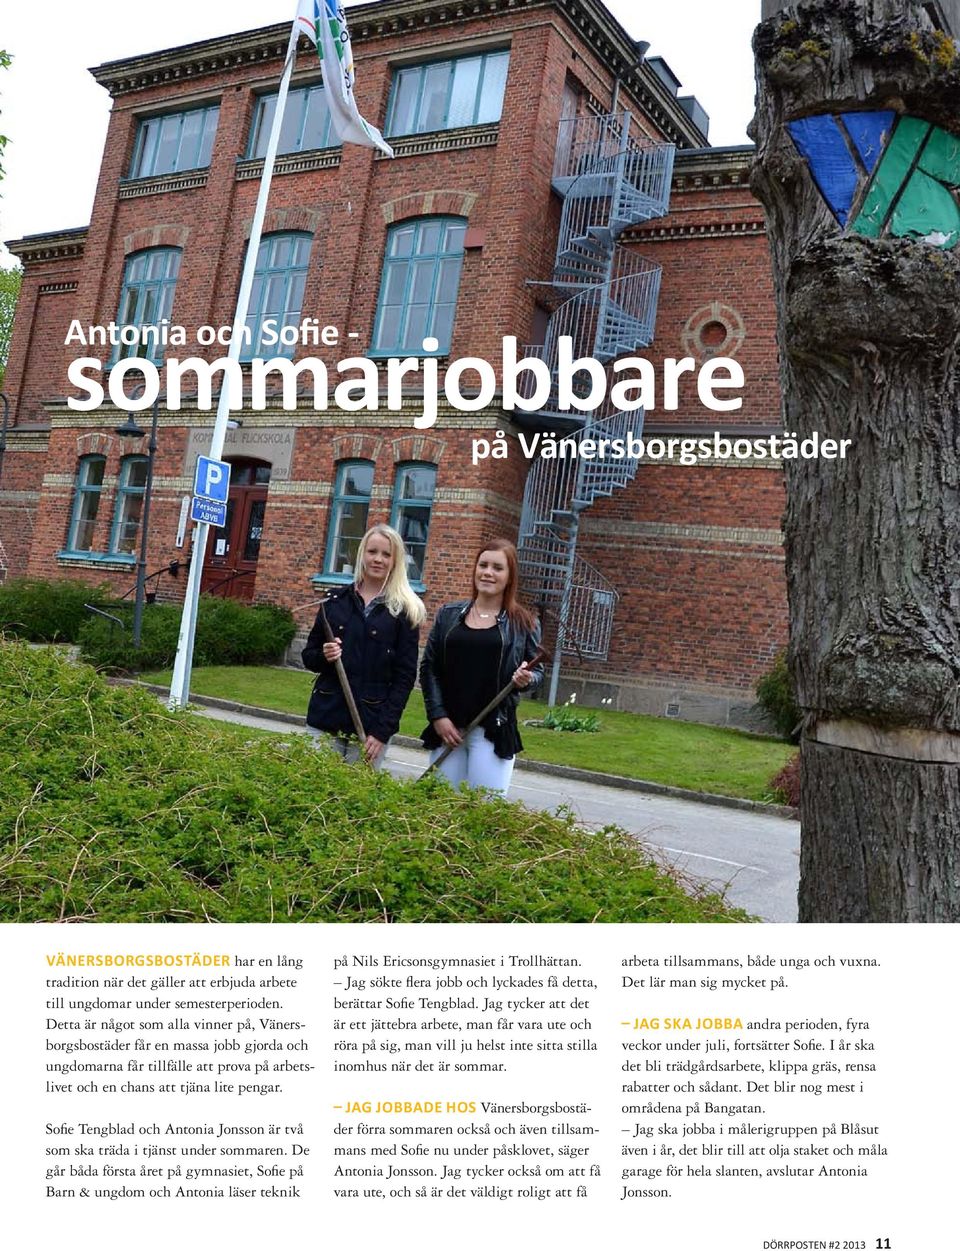 Sofie Tengblad och Antonia Jonsson är två som ska träda i tjänst under sommaren.